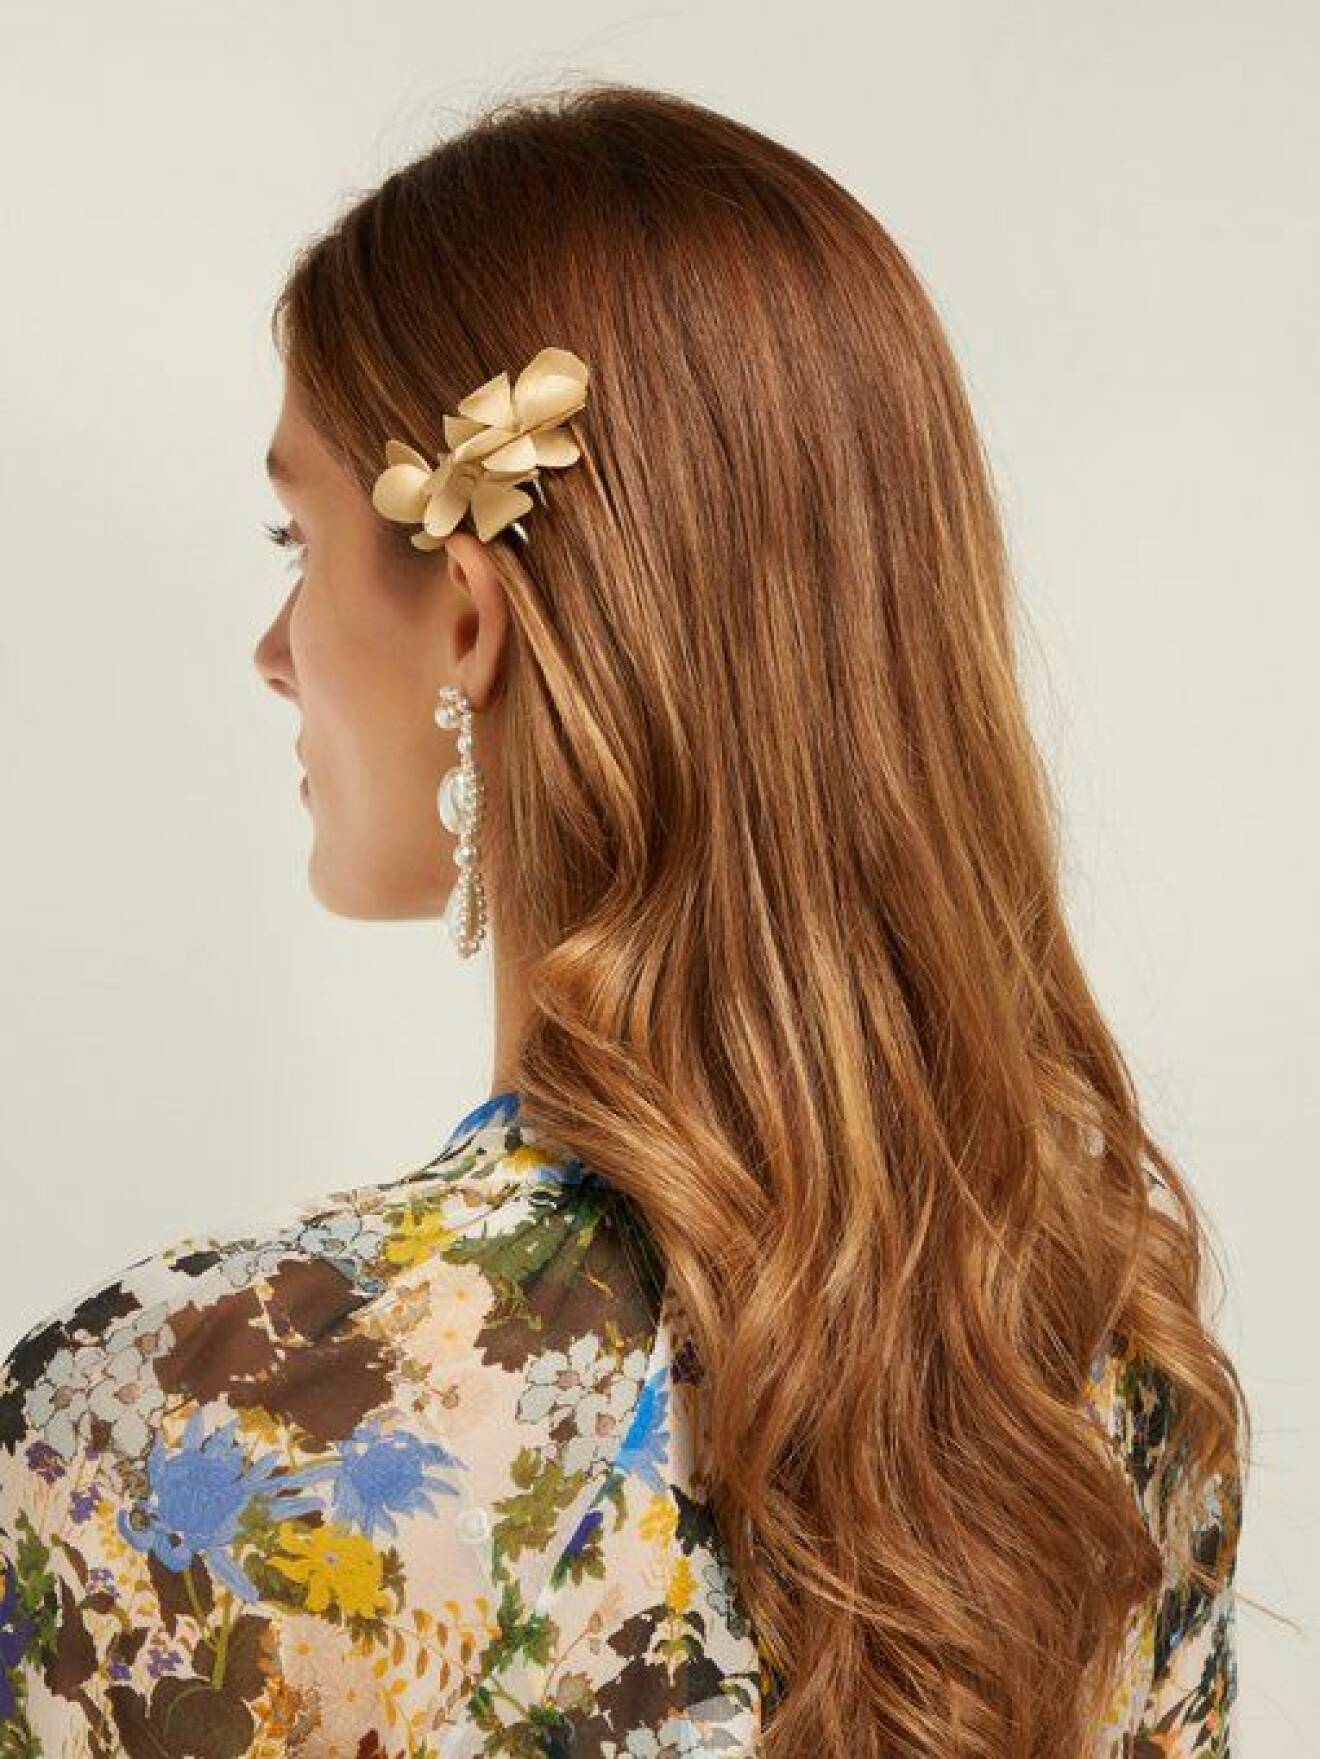 En bild på en hårnål i form av en silkesblomma från Philippa Craddocks nya kollektion på Matchesfashion.com.